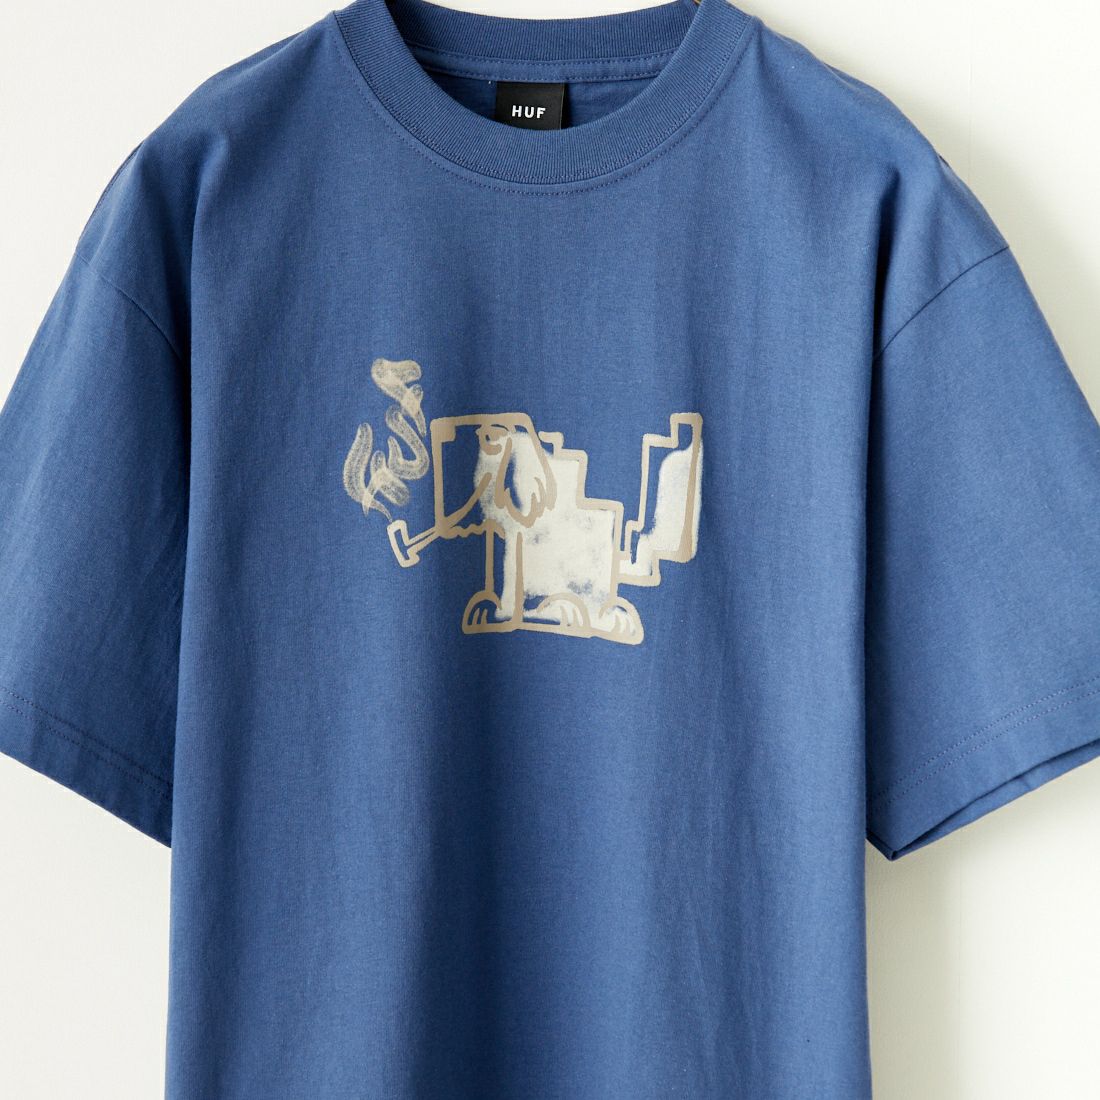 HUF [ハフ] MOD-DOG Tシャツ [TS02179] TWILIGHT